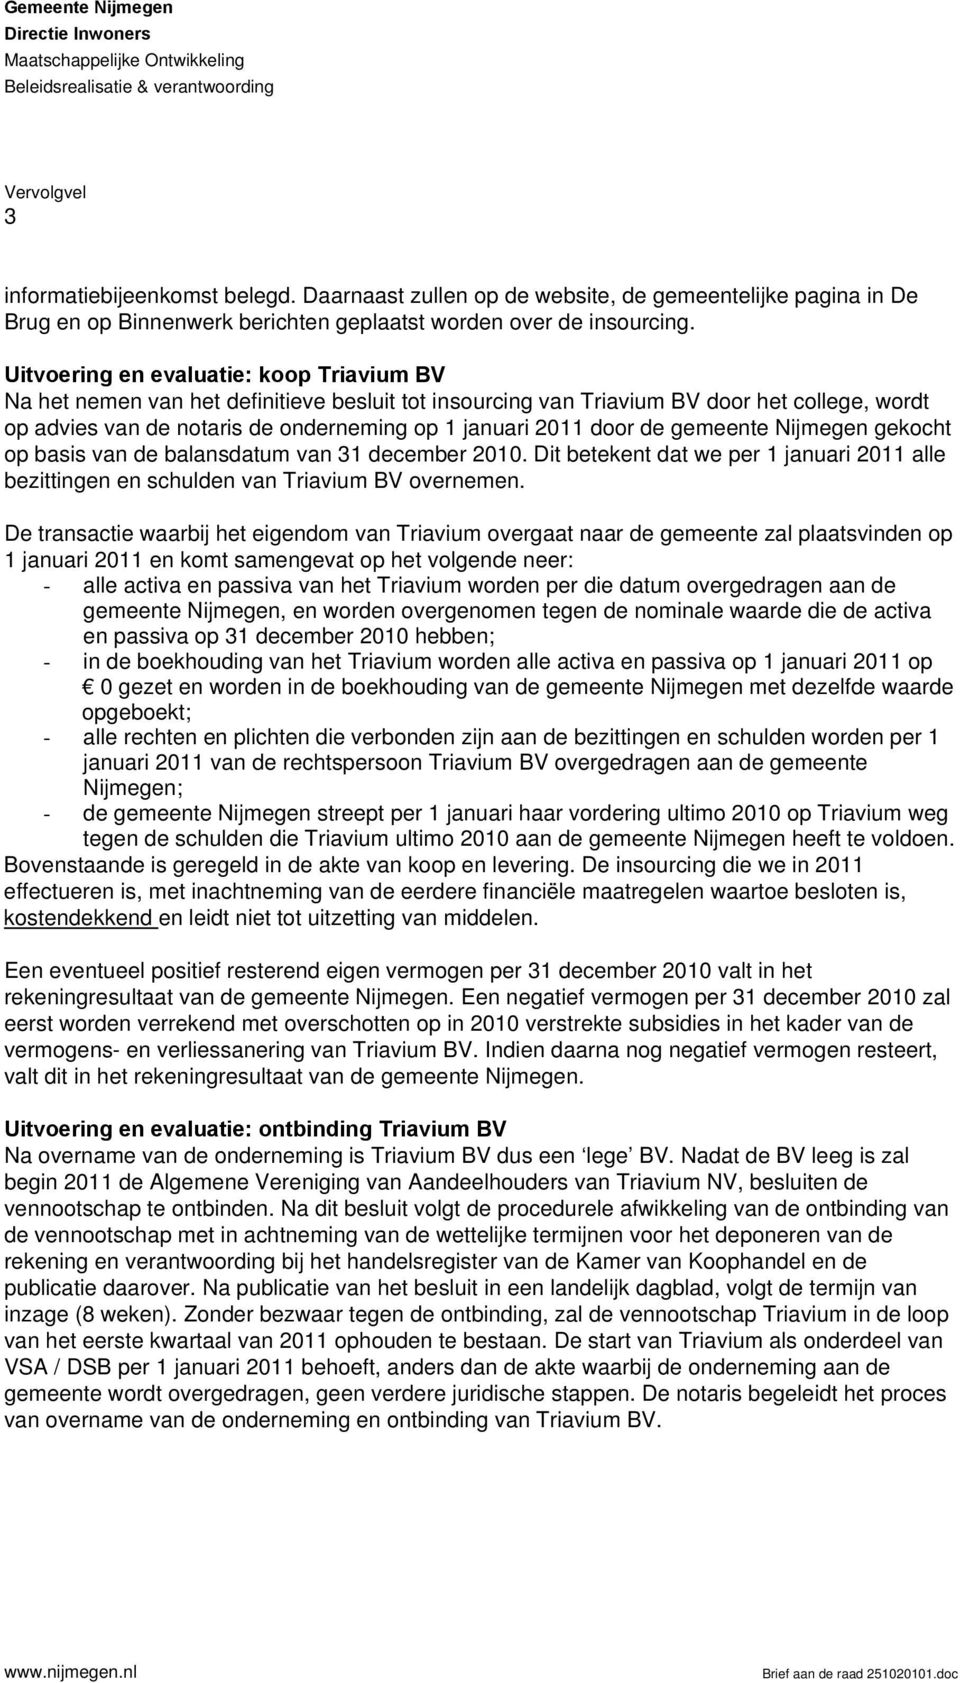 door de gemeente Nijmegen gekocht op basis van de balansdatum van 31 december 2010. Dit betekent dat we per 1 januari 2011 alle bezittingen en schulden van Triavium BV overnemen.